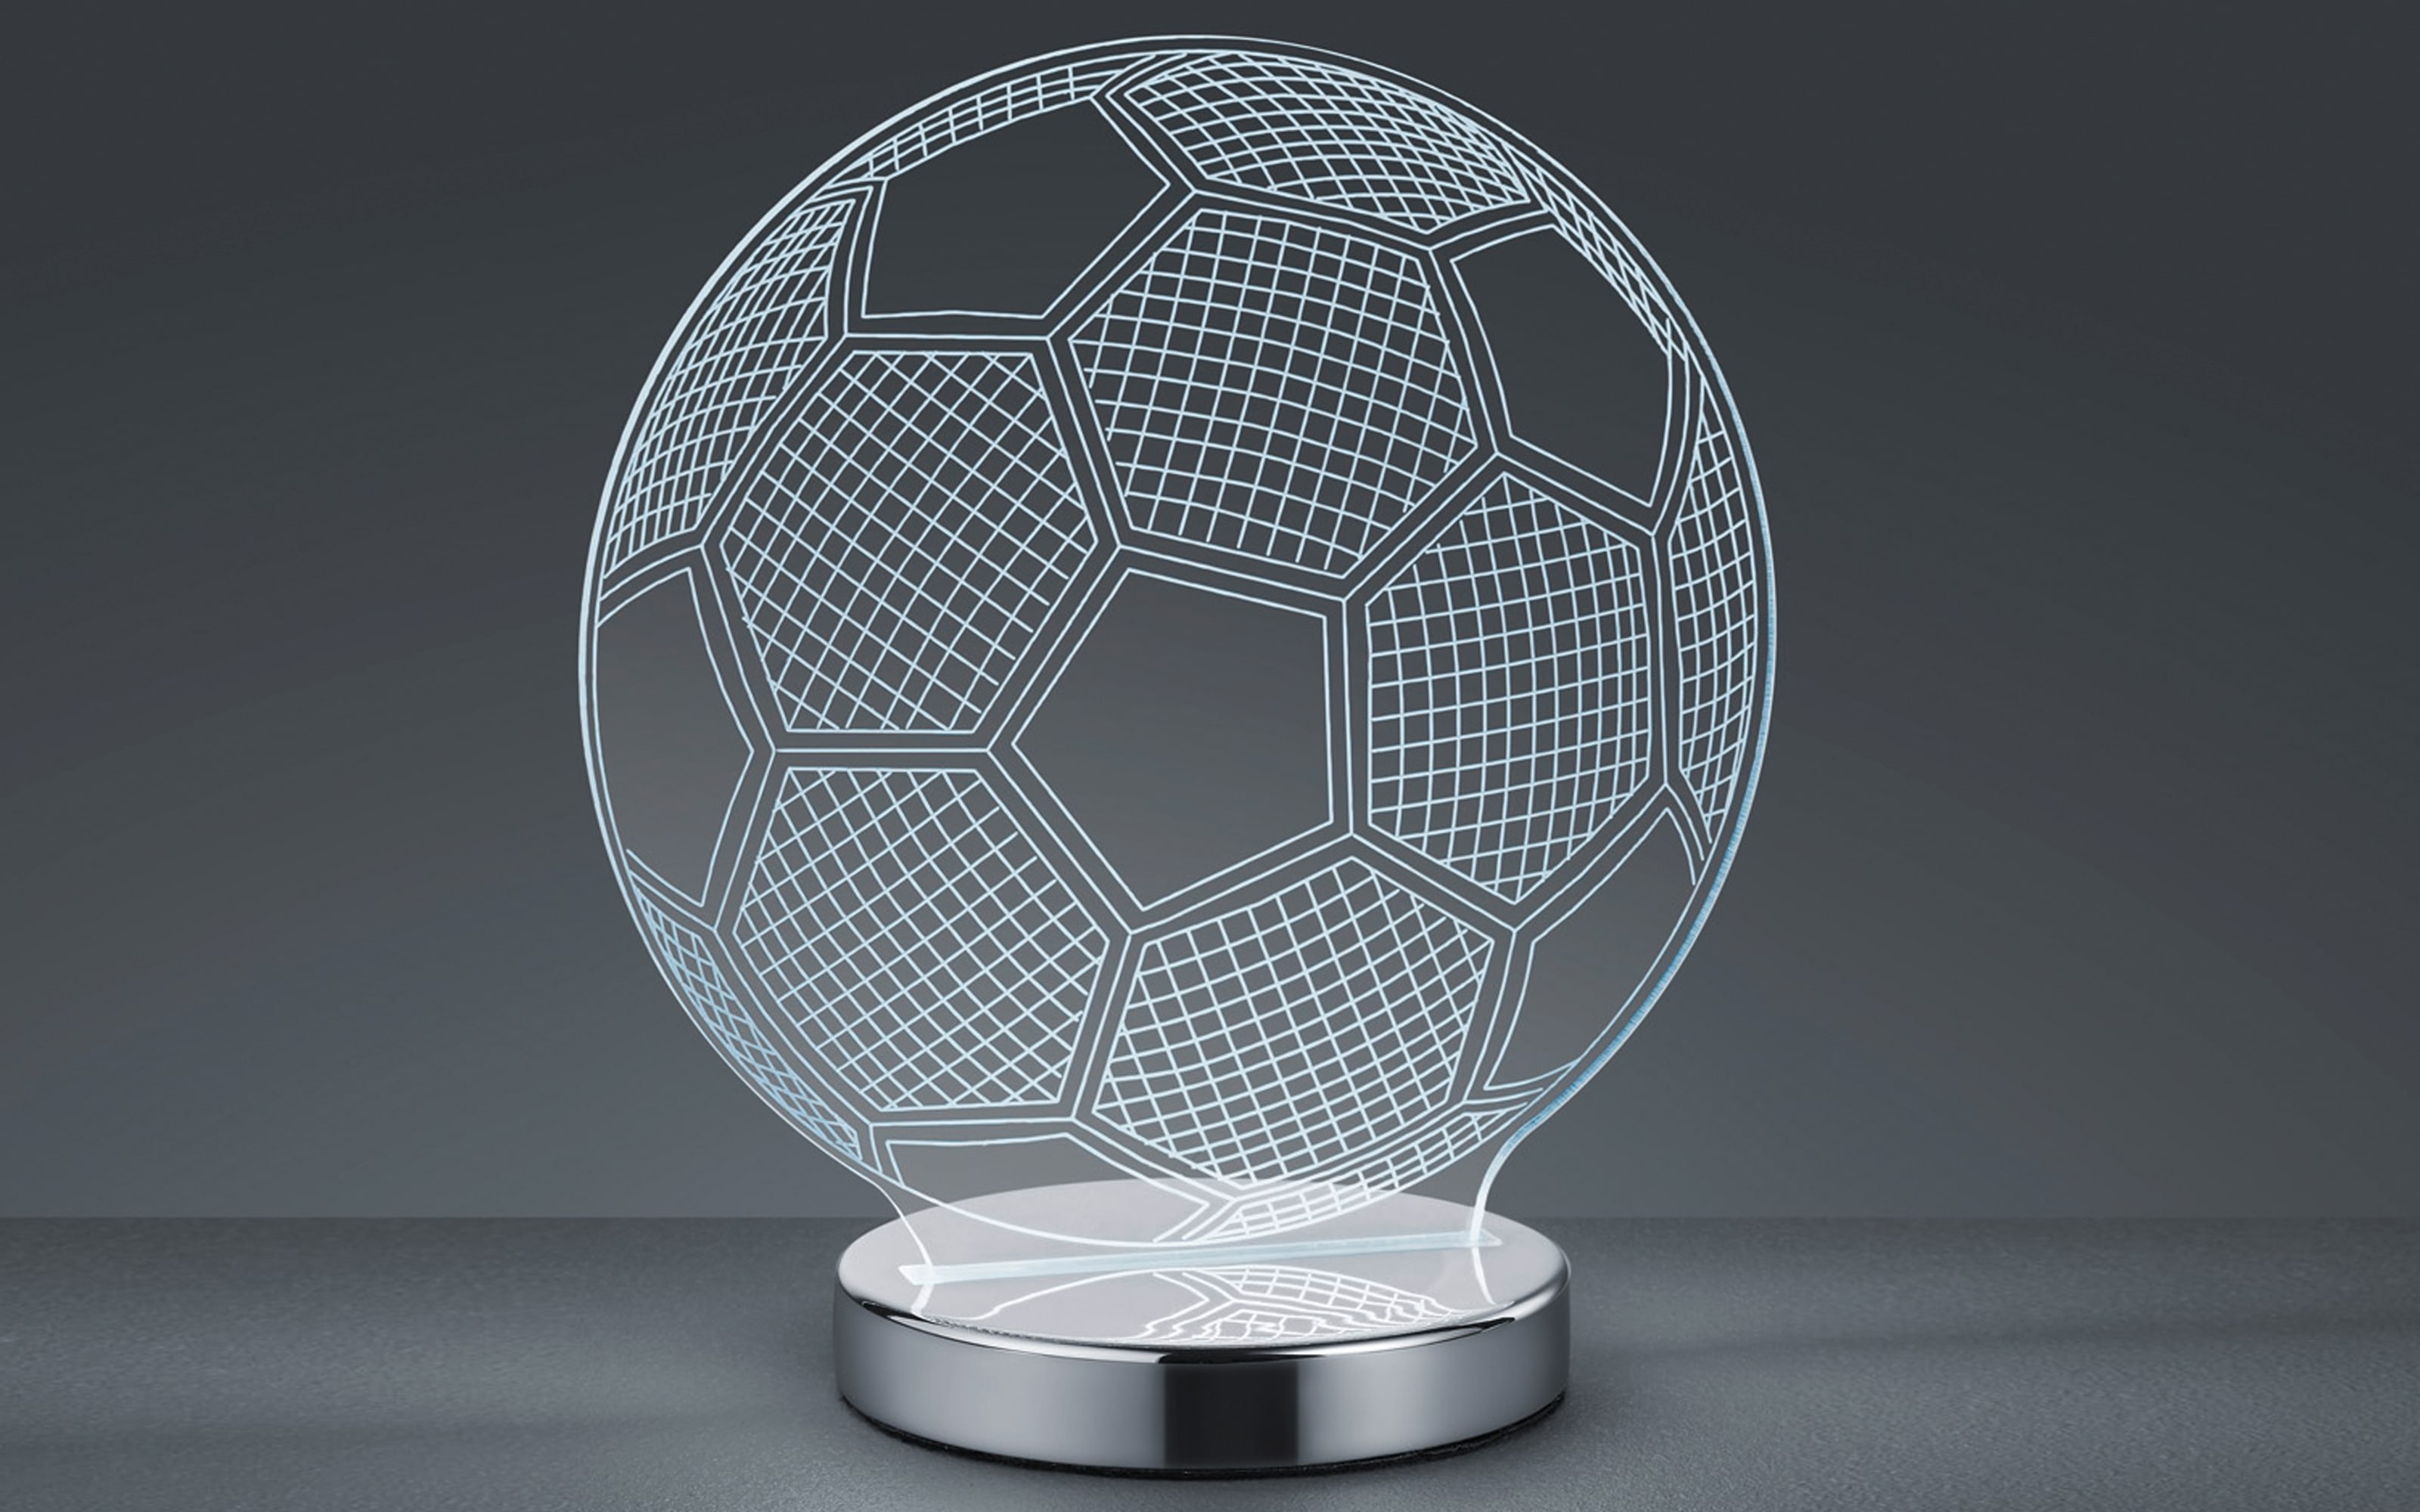 LED-Tischleuchte Ball, chromfarbig, 20 cm